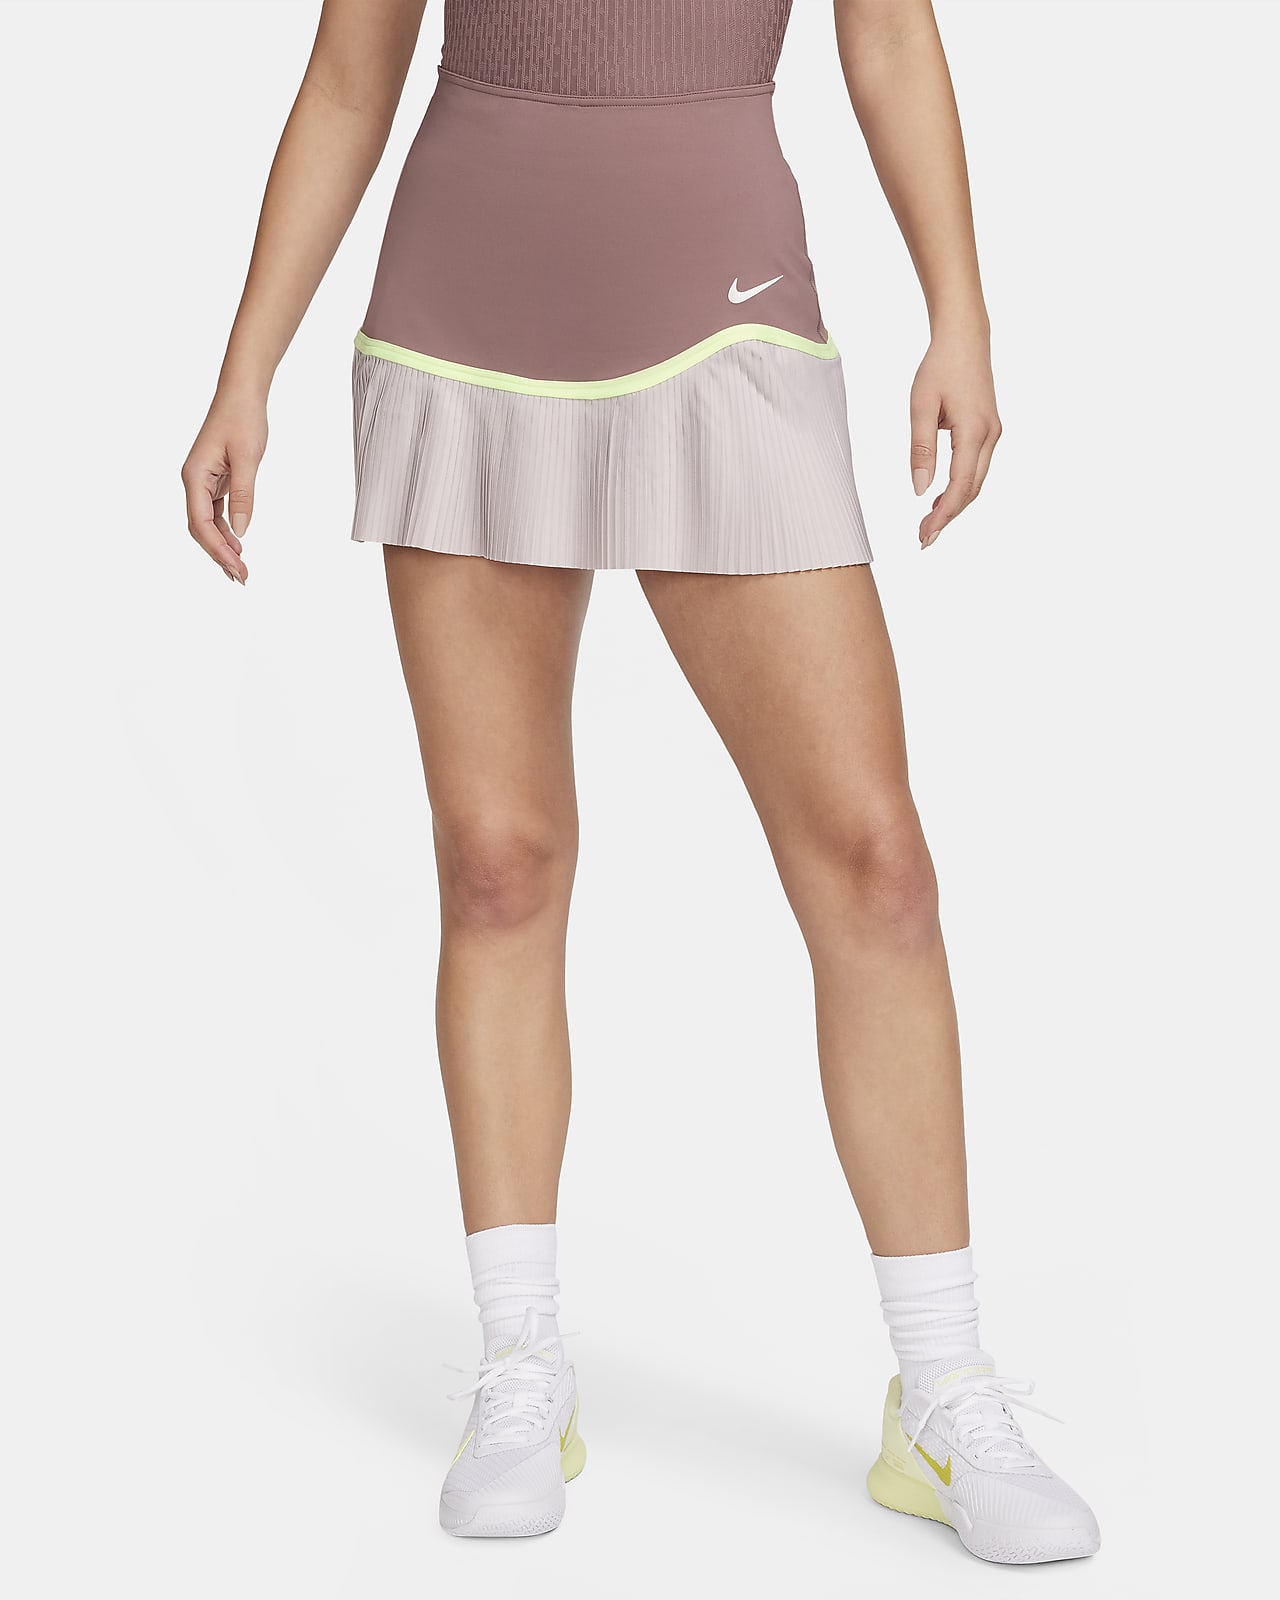 Nike Advantage Dri-FIT Tennisrock für Damen